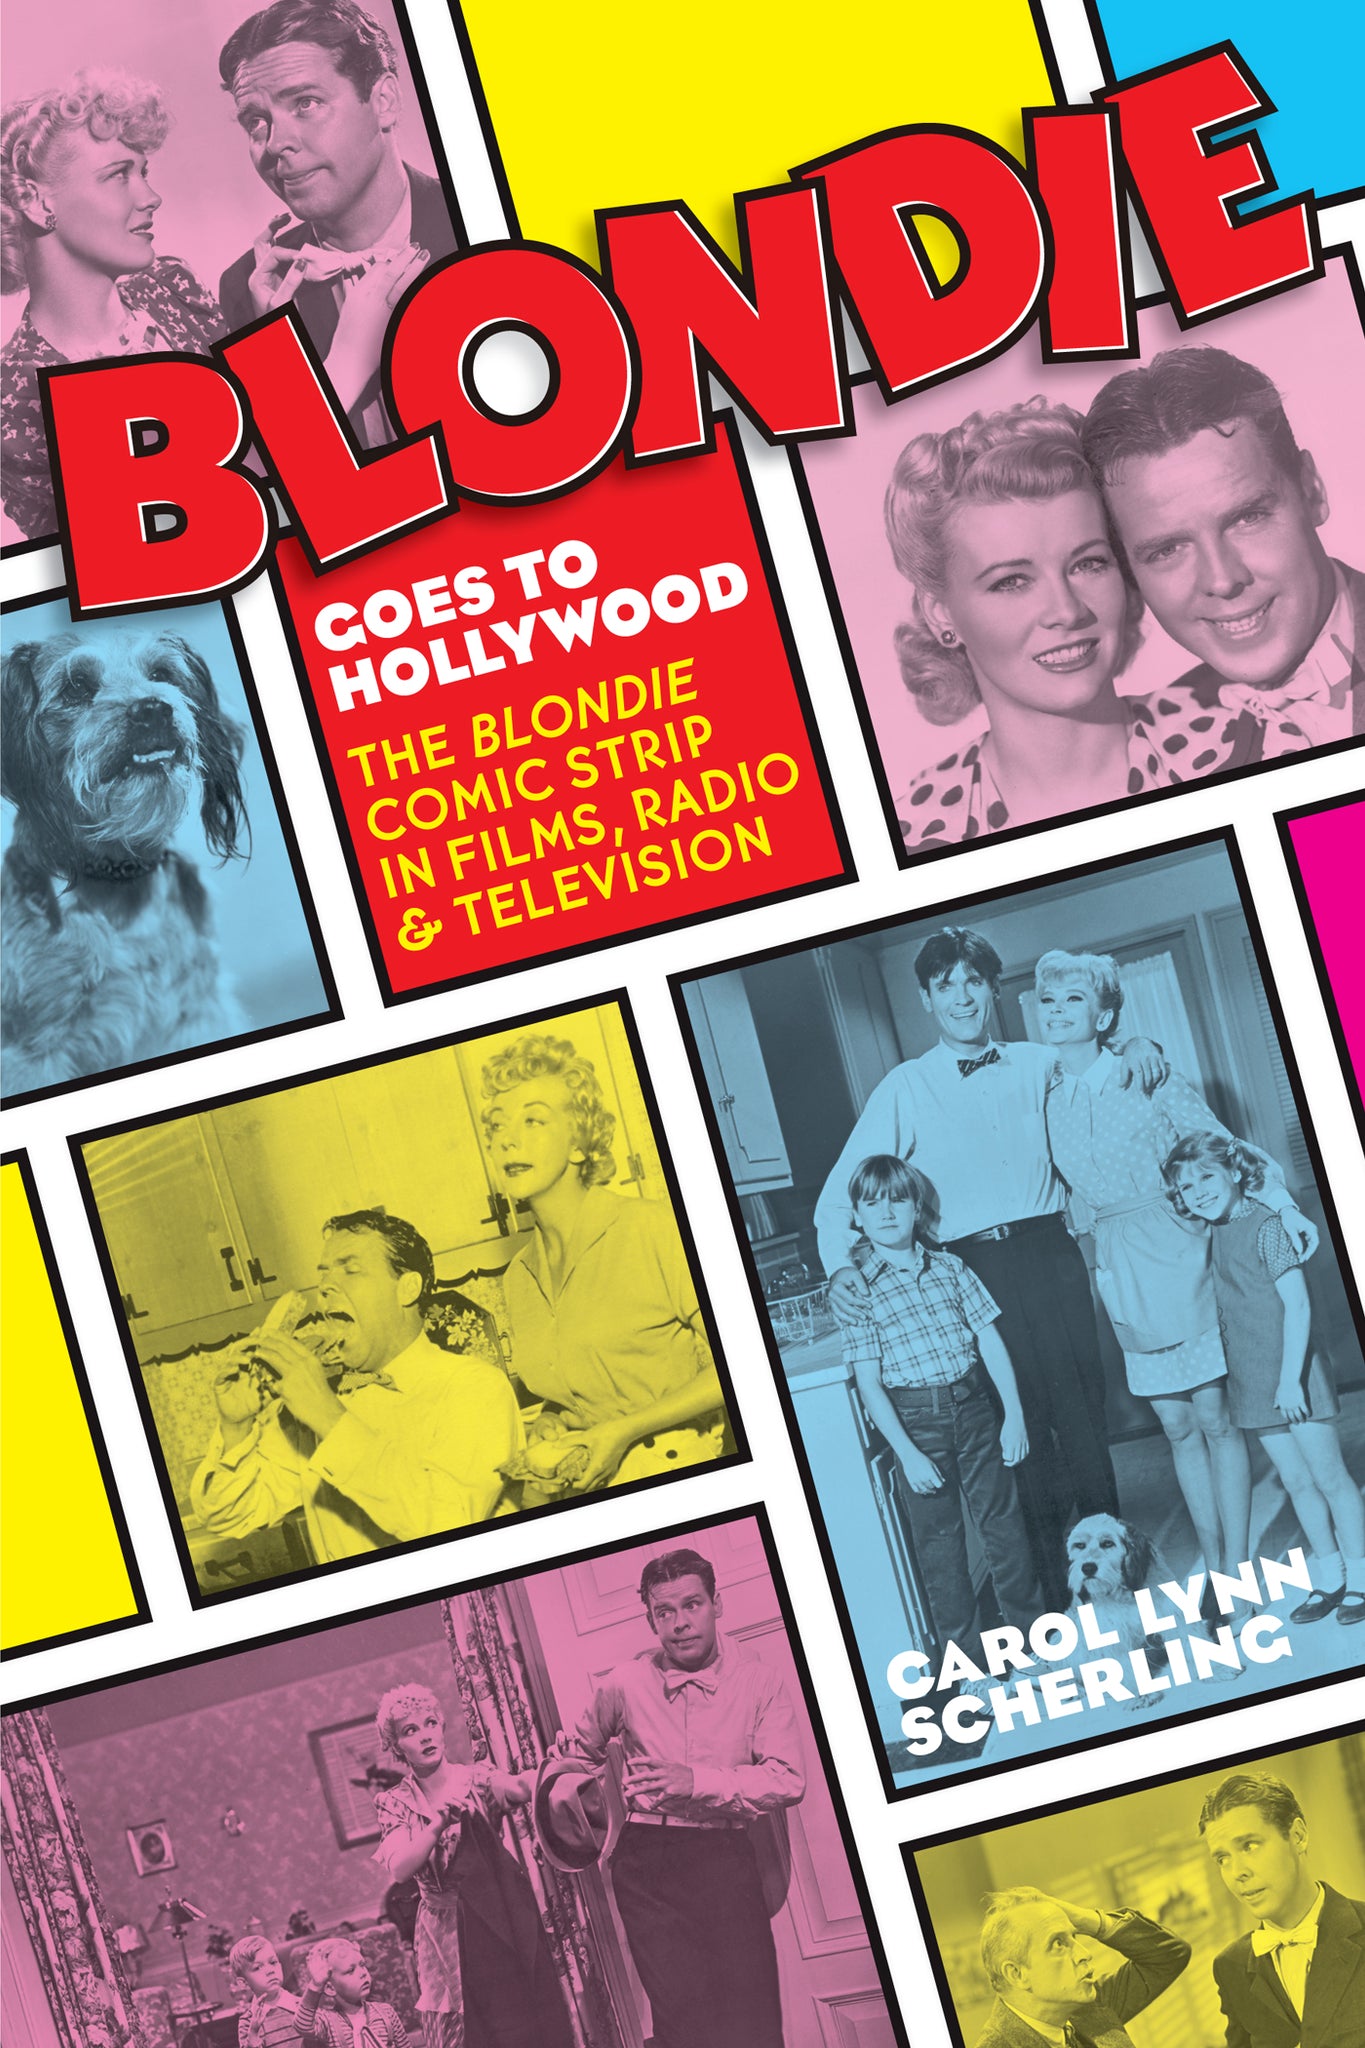 Blondie Goes to Hollywood: The Blondie Comic Strip in Films, Radio & Television (ebook) - BearManor Manor